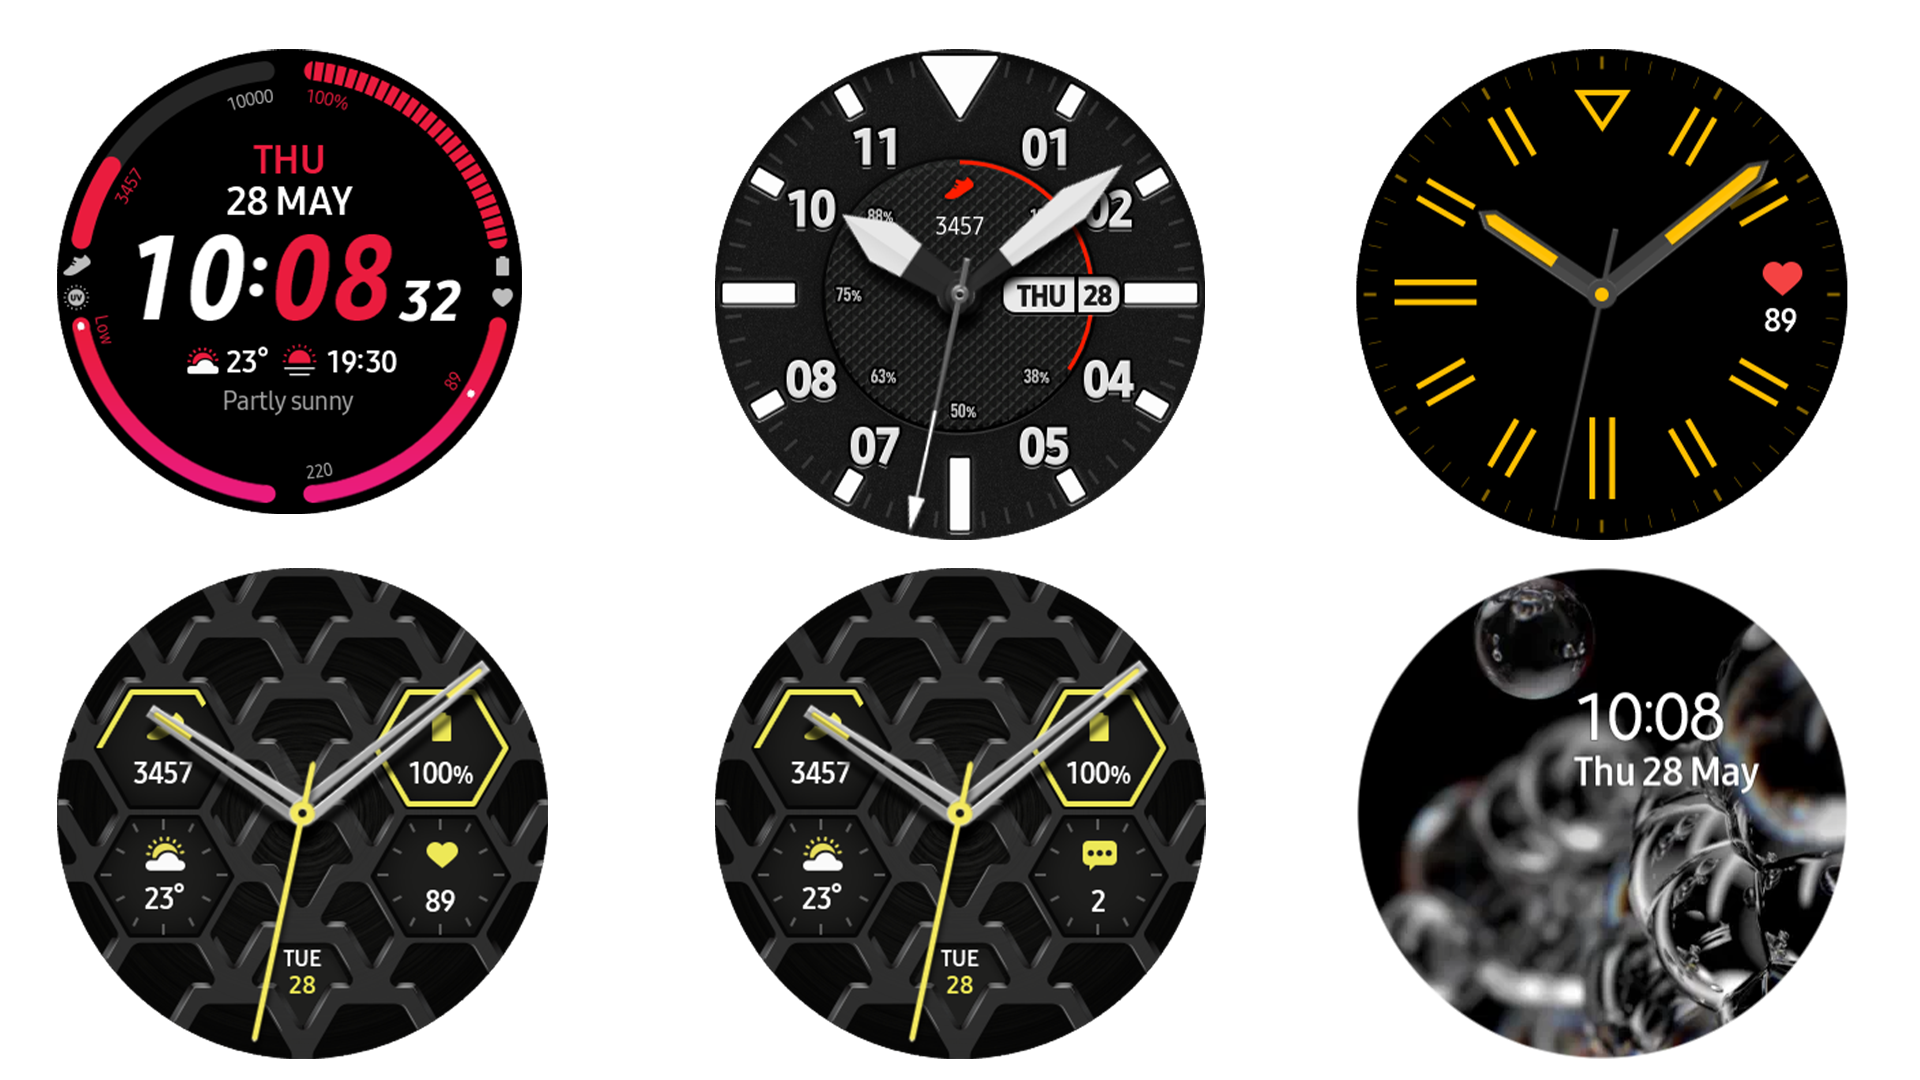 Циферблаты watch 3 pro. Смарт часы самсунг 4 циферблаты. Самсунг галакси вотч 4 циферблаты. Часы самсунг галакси вотч 3. Циферблаты для Samsung Galaxy watch 3.